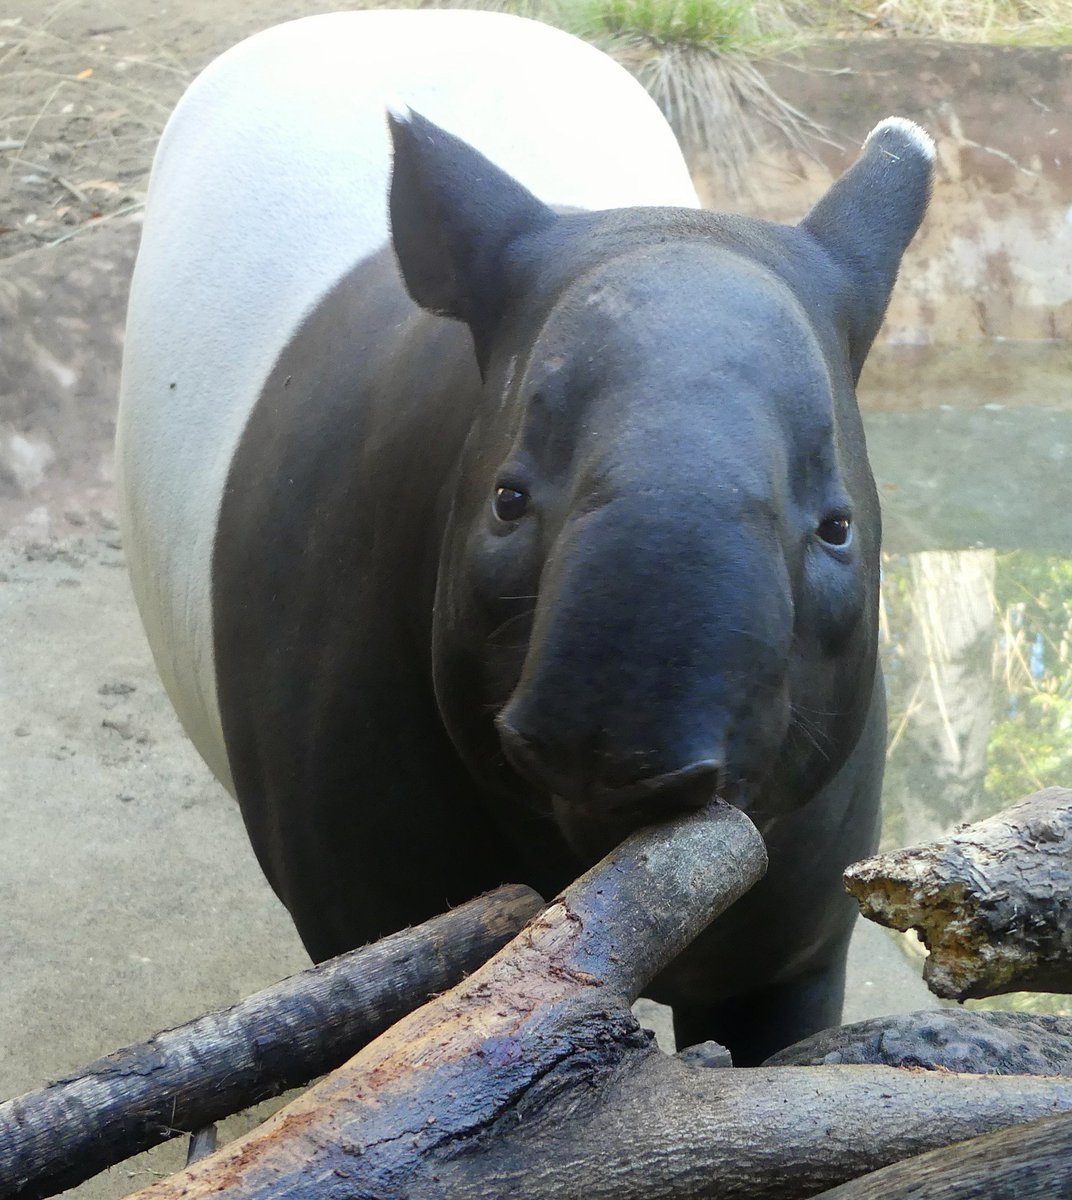 会いたいなぁ、ひでお。
📷2023.12.6
#ズーラシア #よこはま動物園 #ZOORASIA
#マレーバク #Malayantapir #ひでお